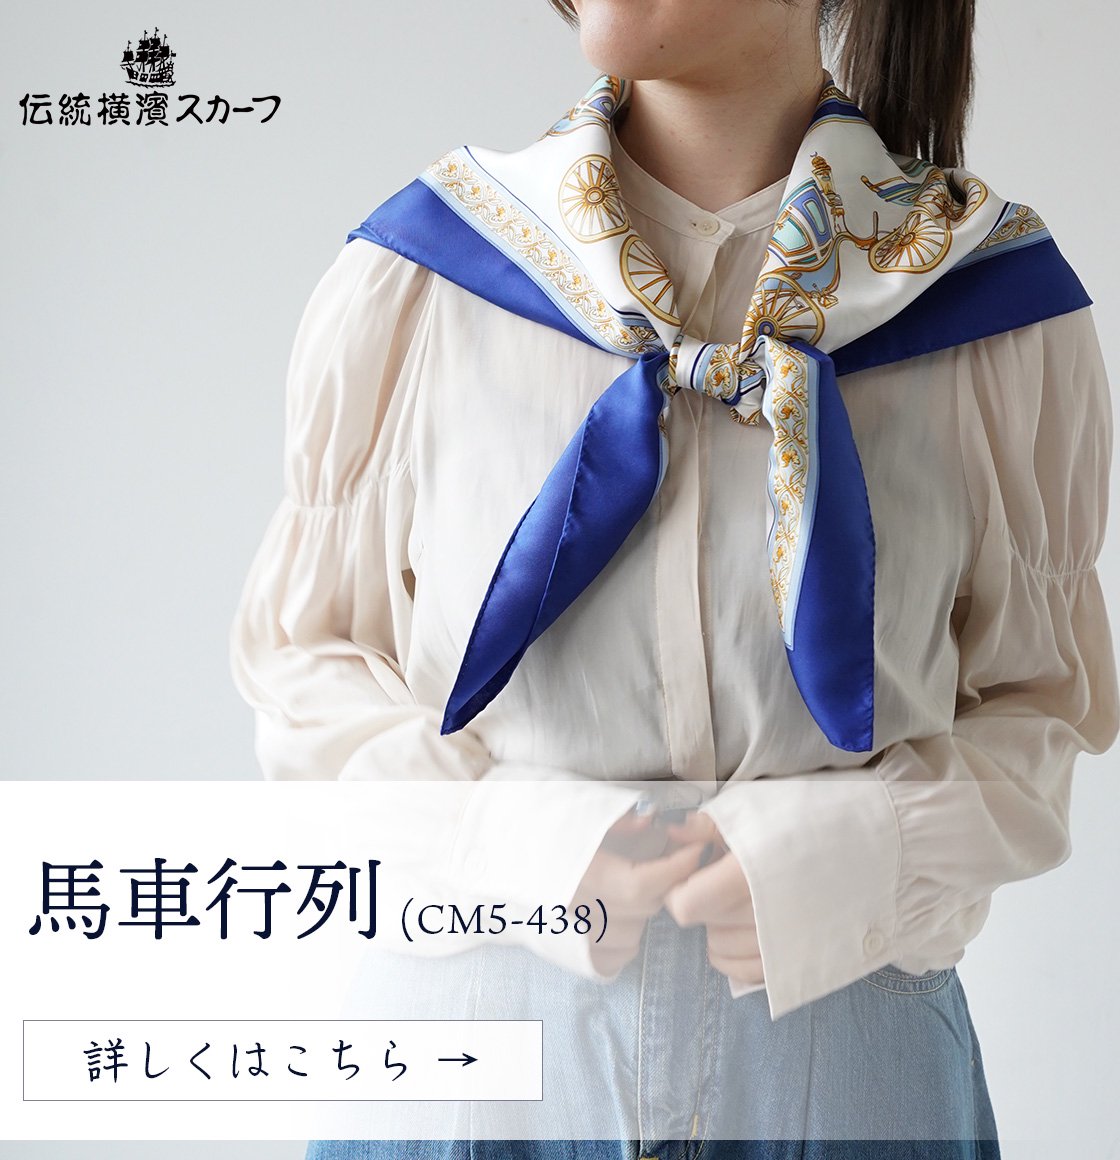 ぶどう(CM1-023) 伝統横濱スカーフ 大判 シルクツイル スカーフ